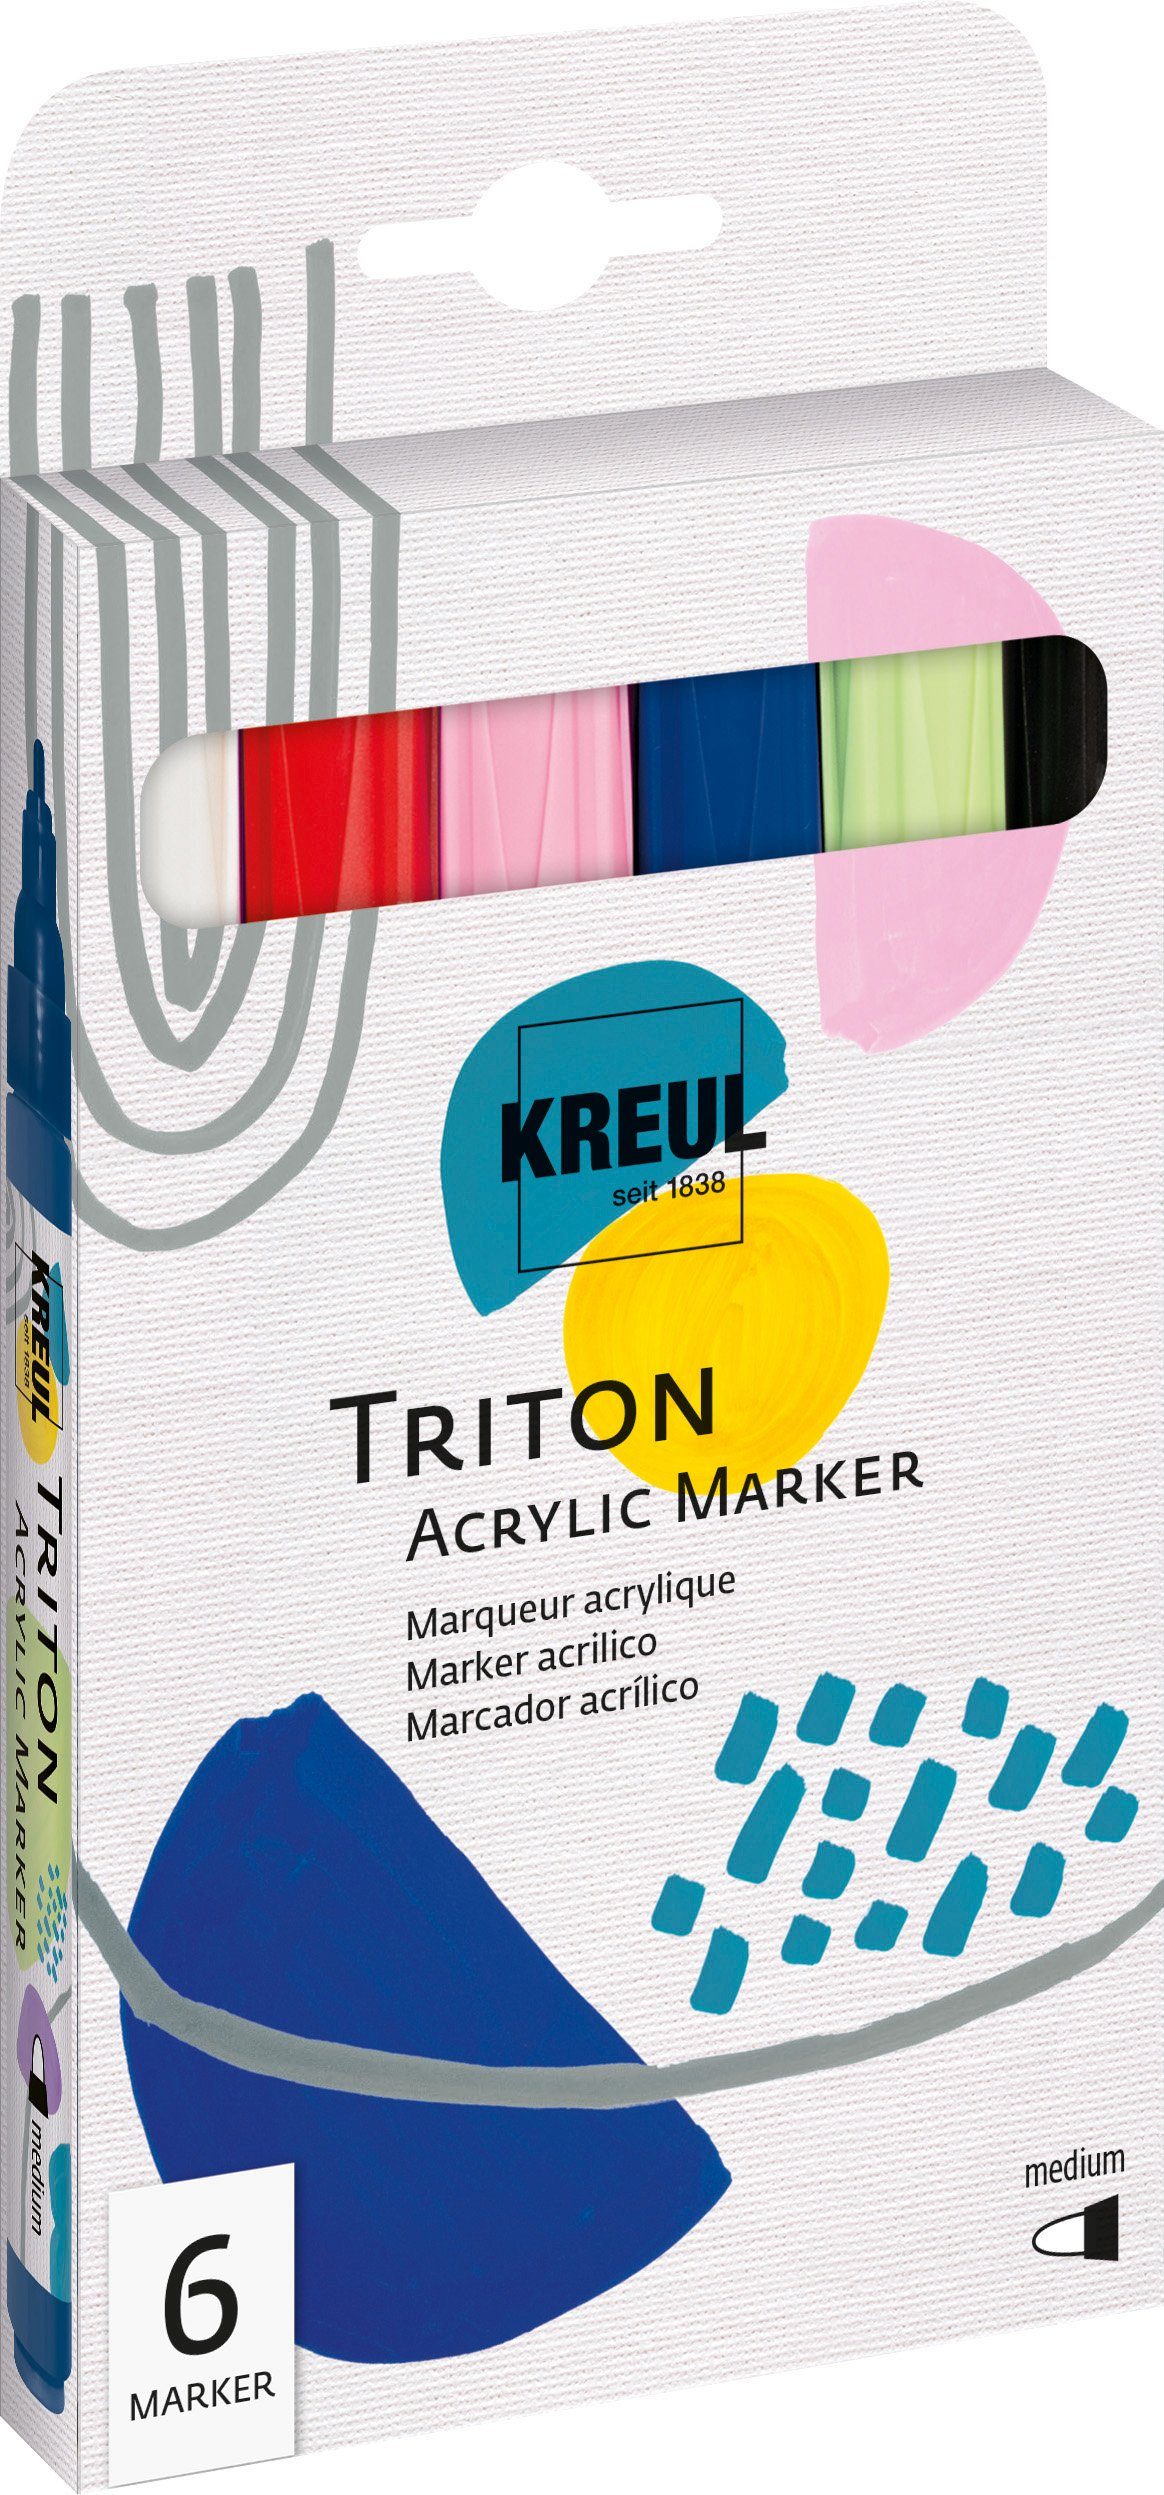 Kreul Marker Triton Acrylic Marker Medium